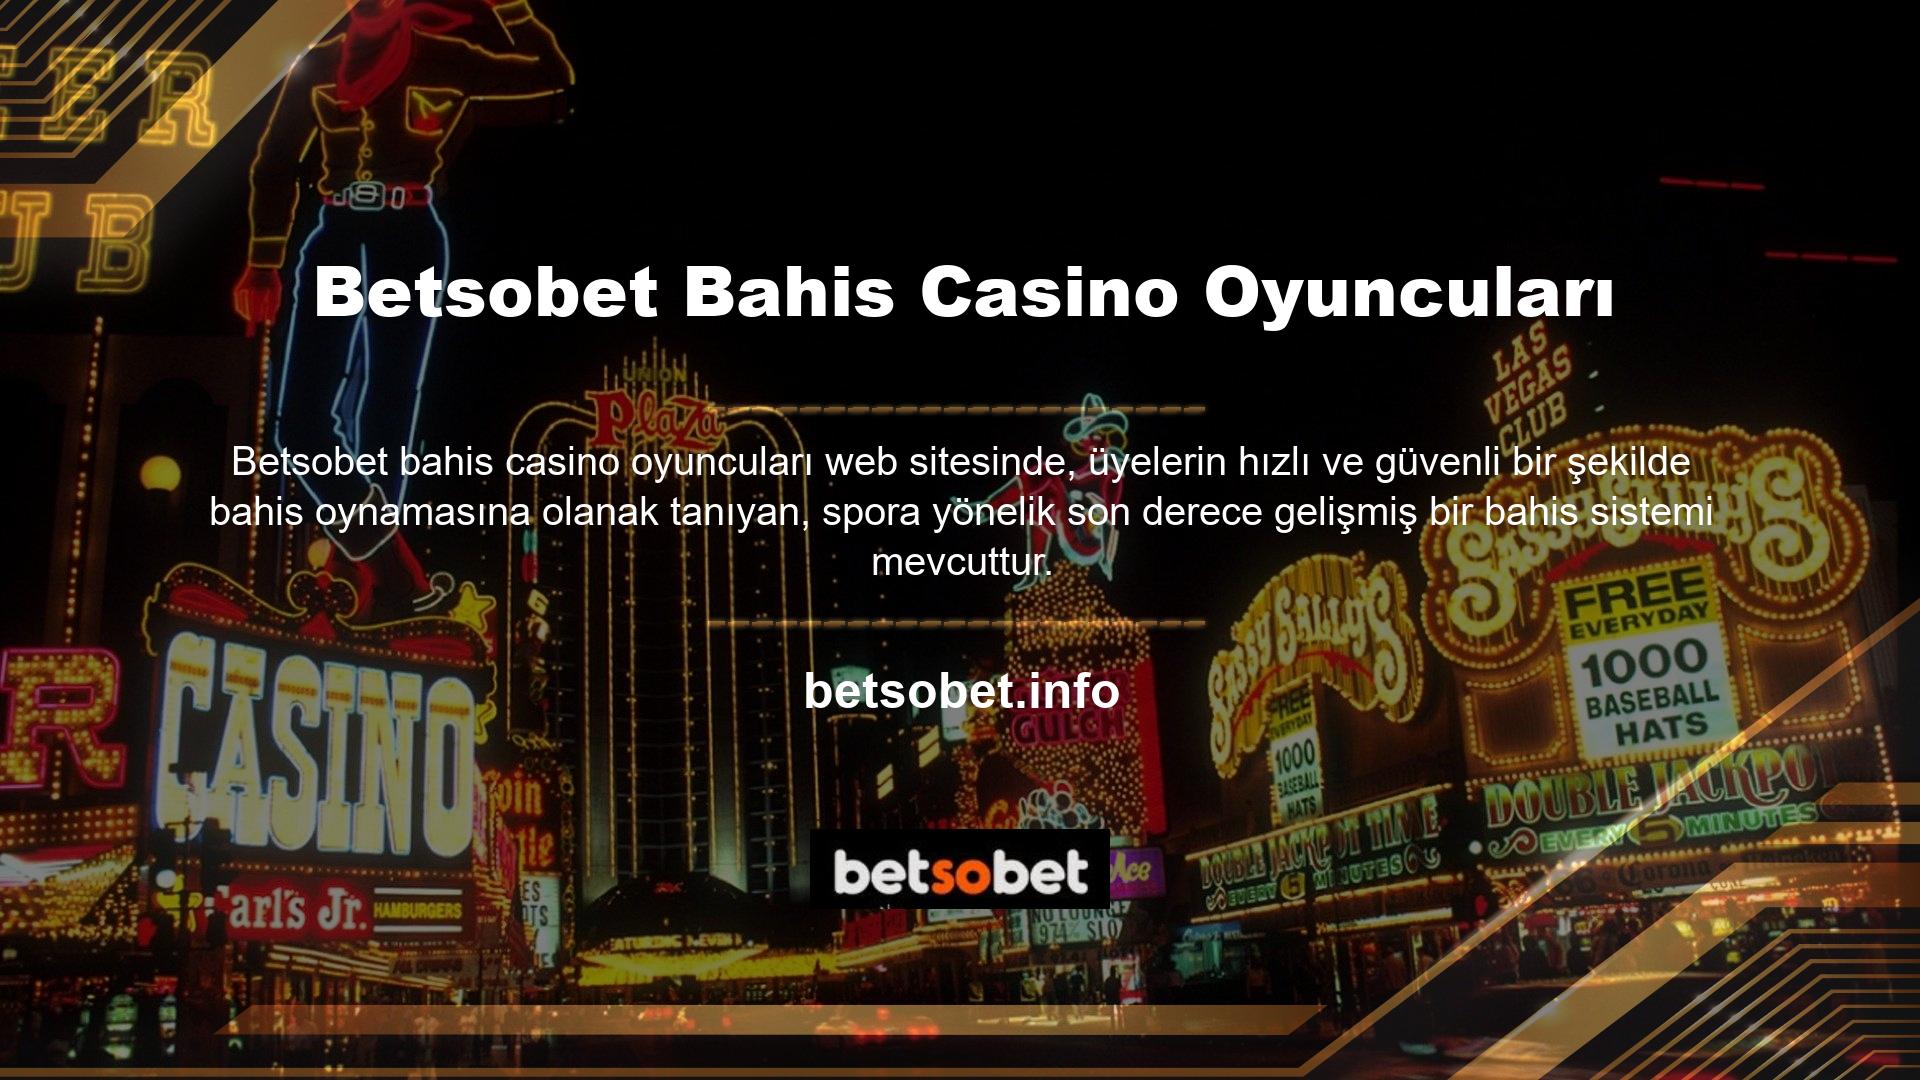 Gördüğünüz gibi bahis casino oyuncuları sitesi Betsobet tüm bölümleri kullanışlı değil